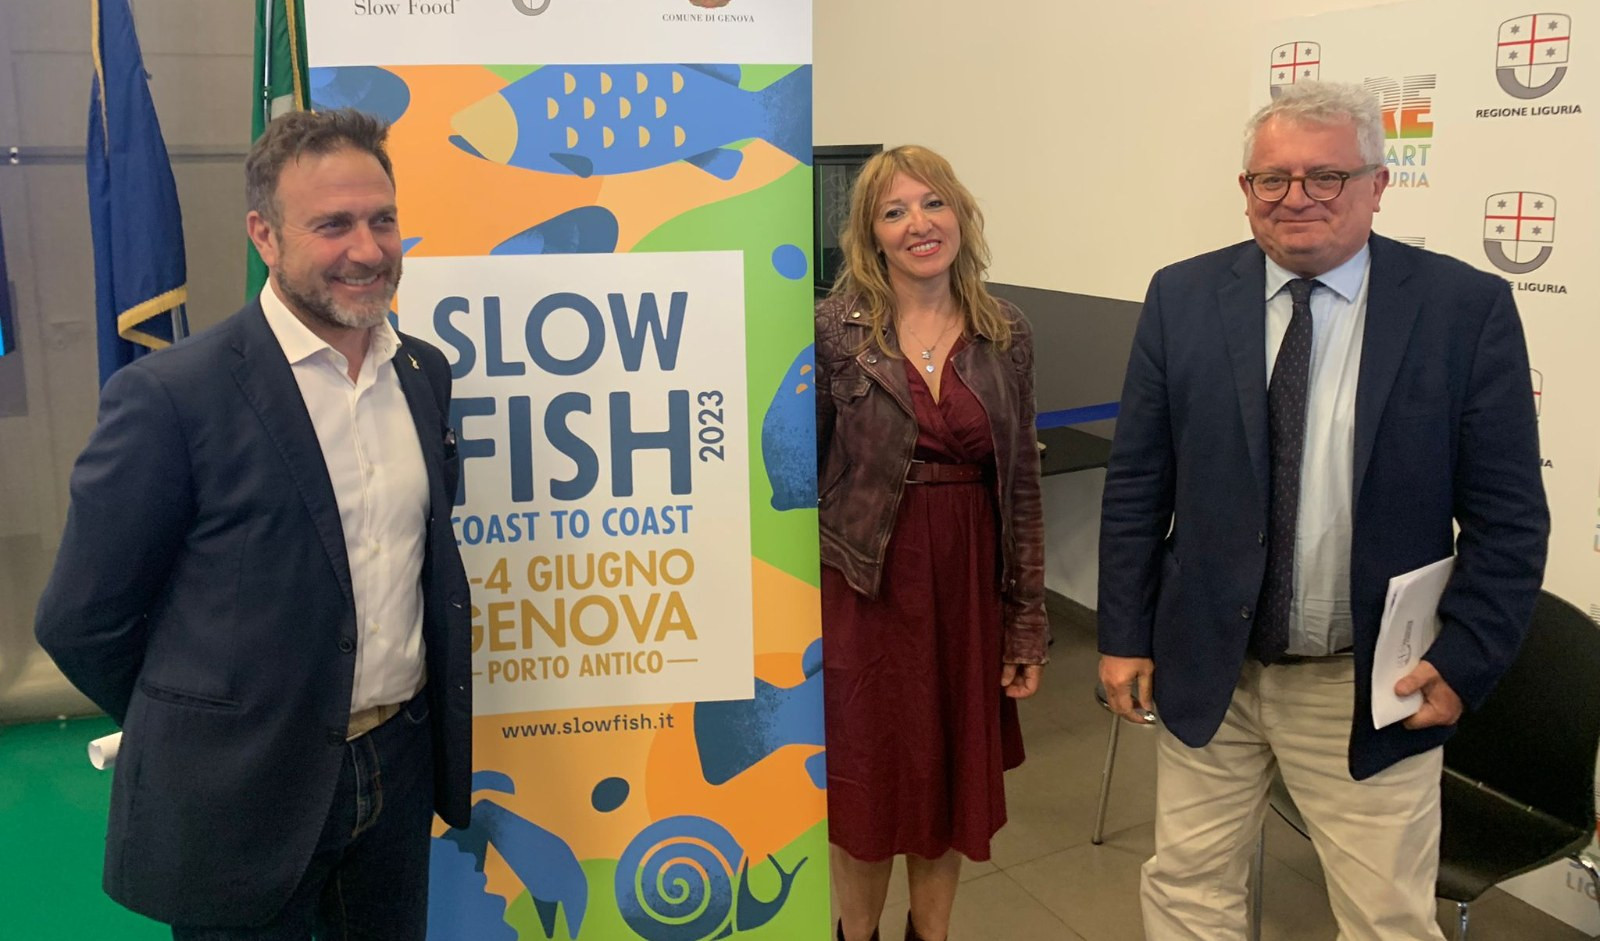 Tutte le parole di Slow Fish 2023: al Porto Antico di Genova dall'1 al 4 giugno